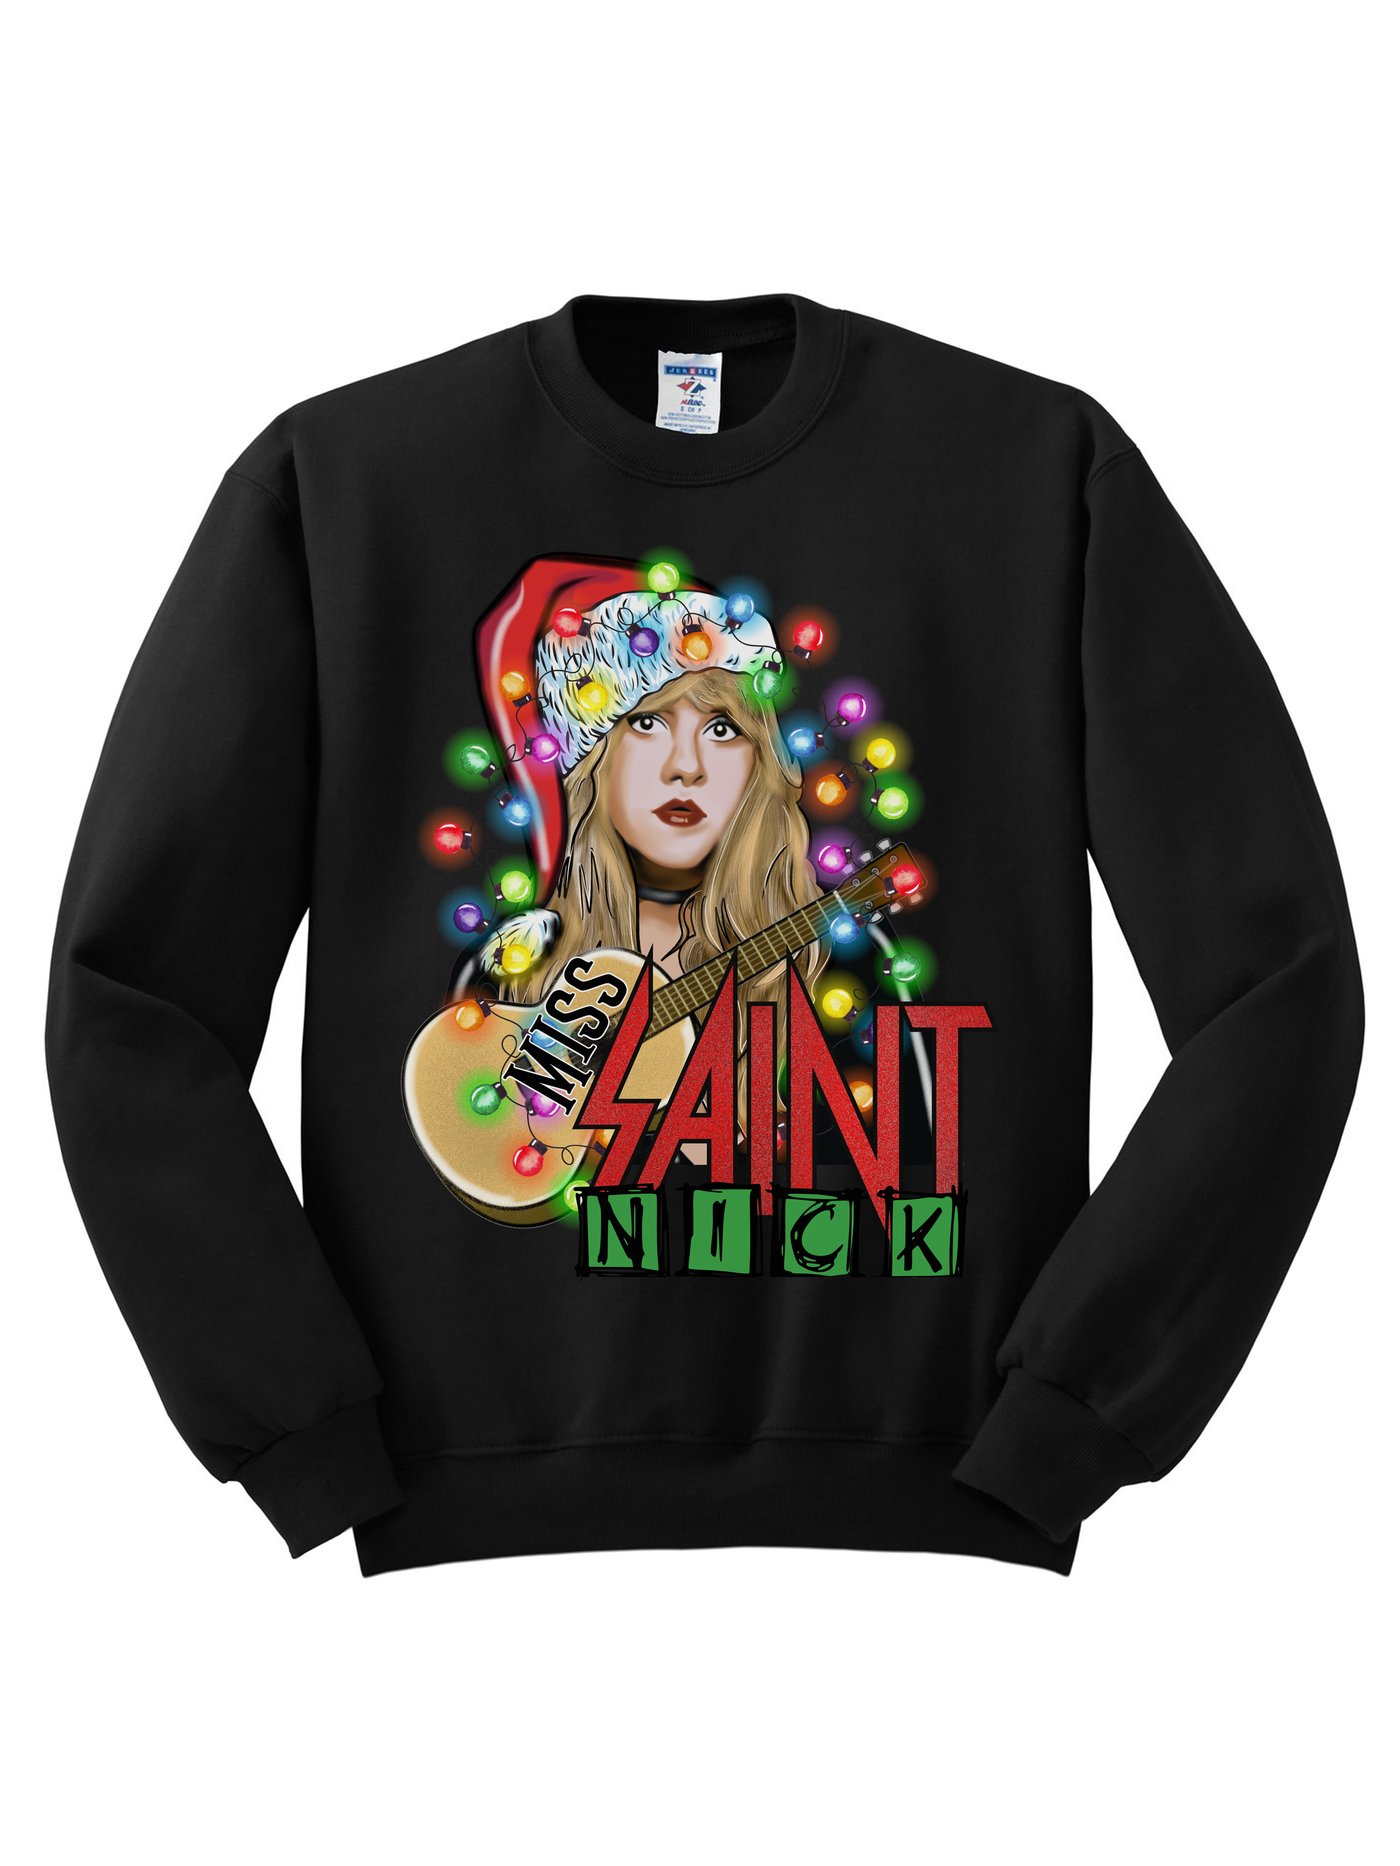 Miss Saint Nick Tee/Sweatshirt